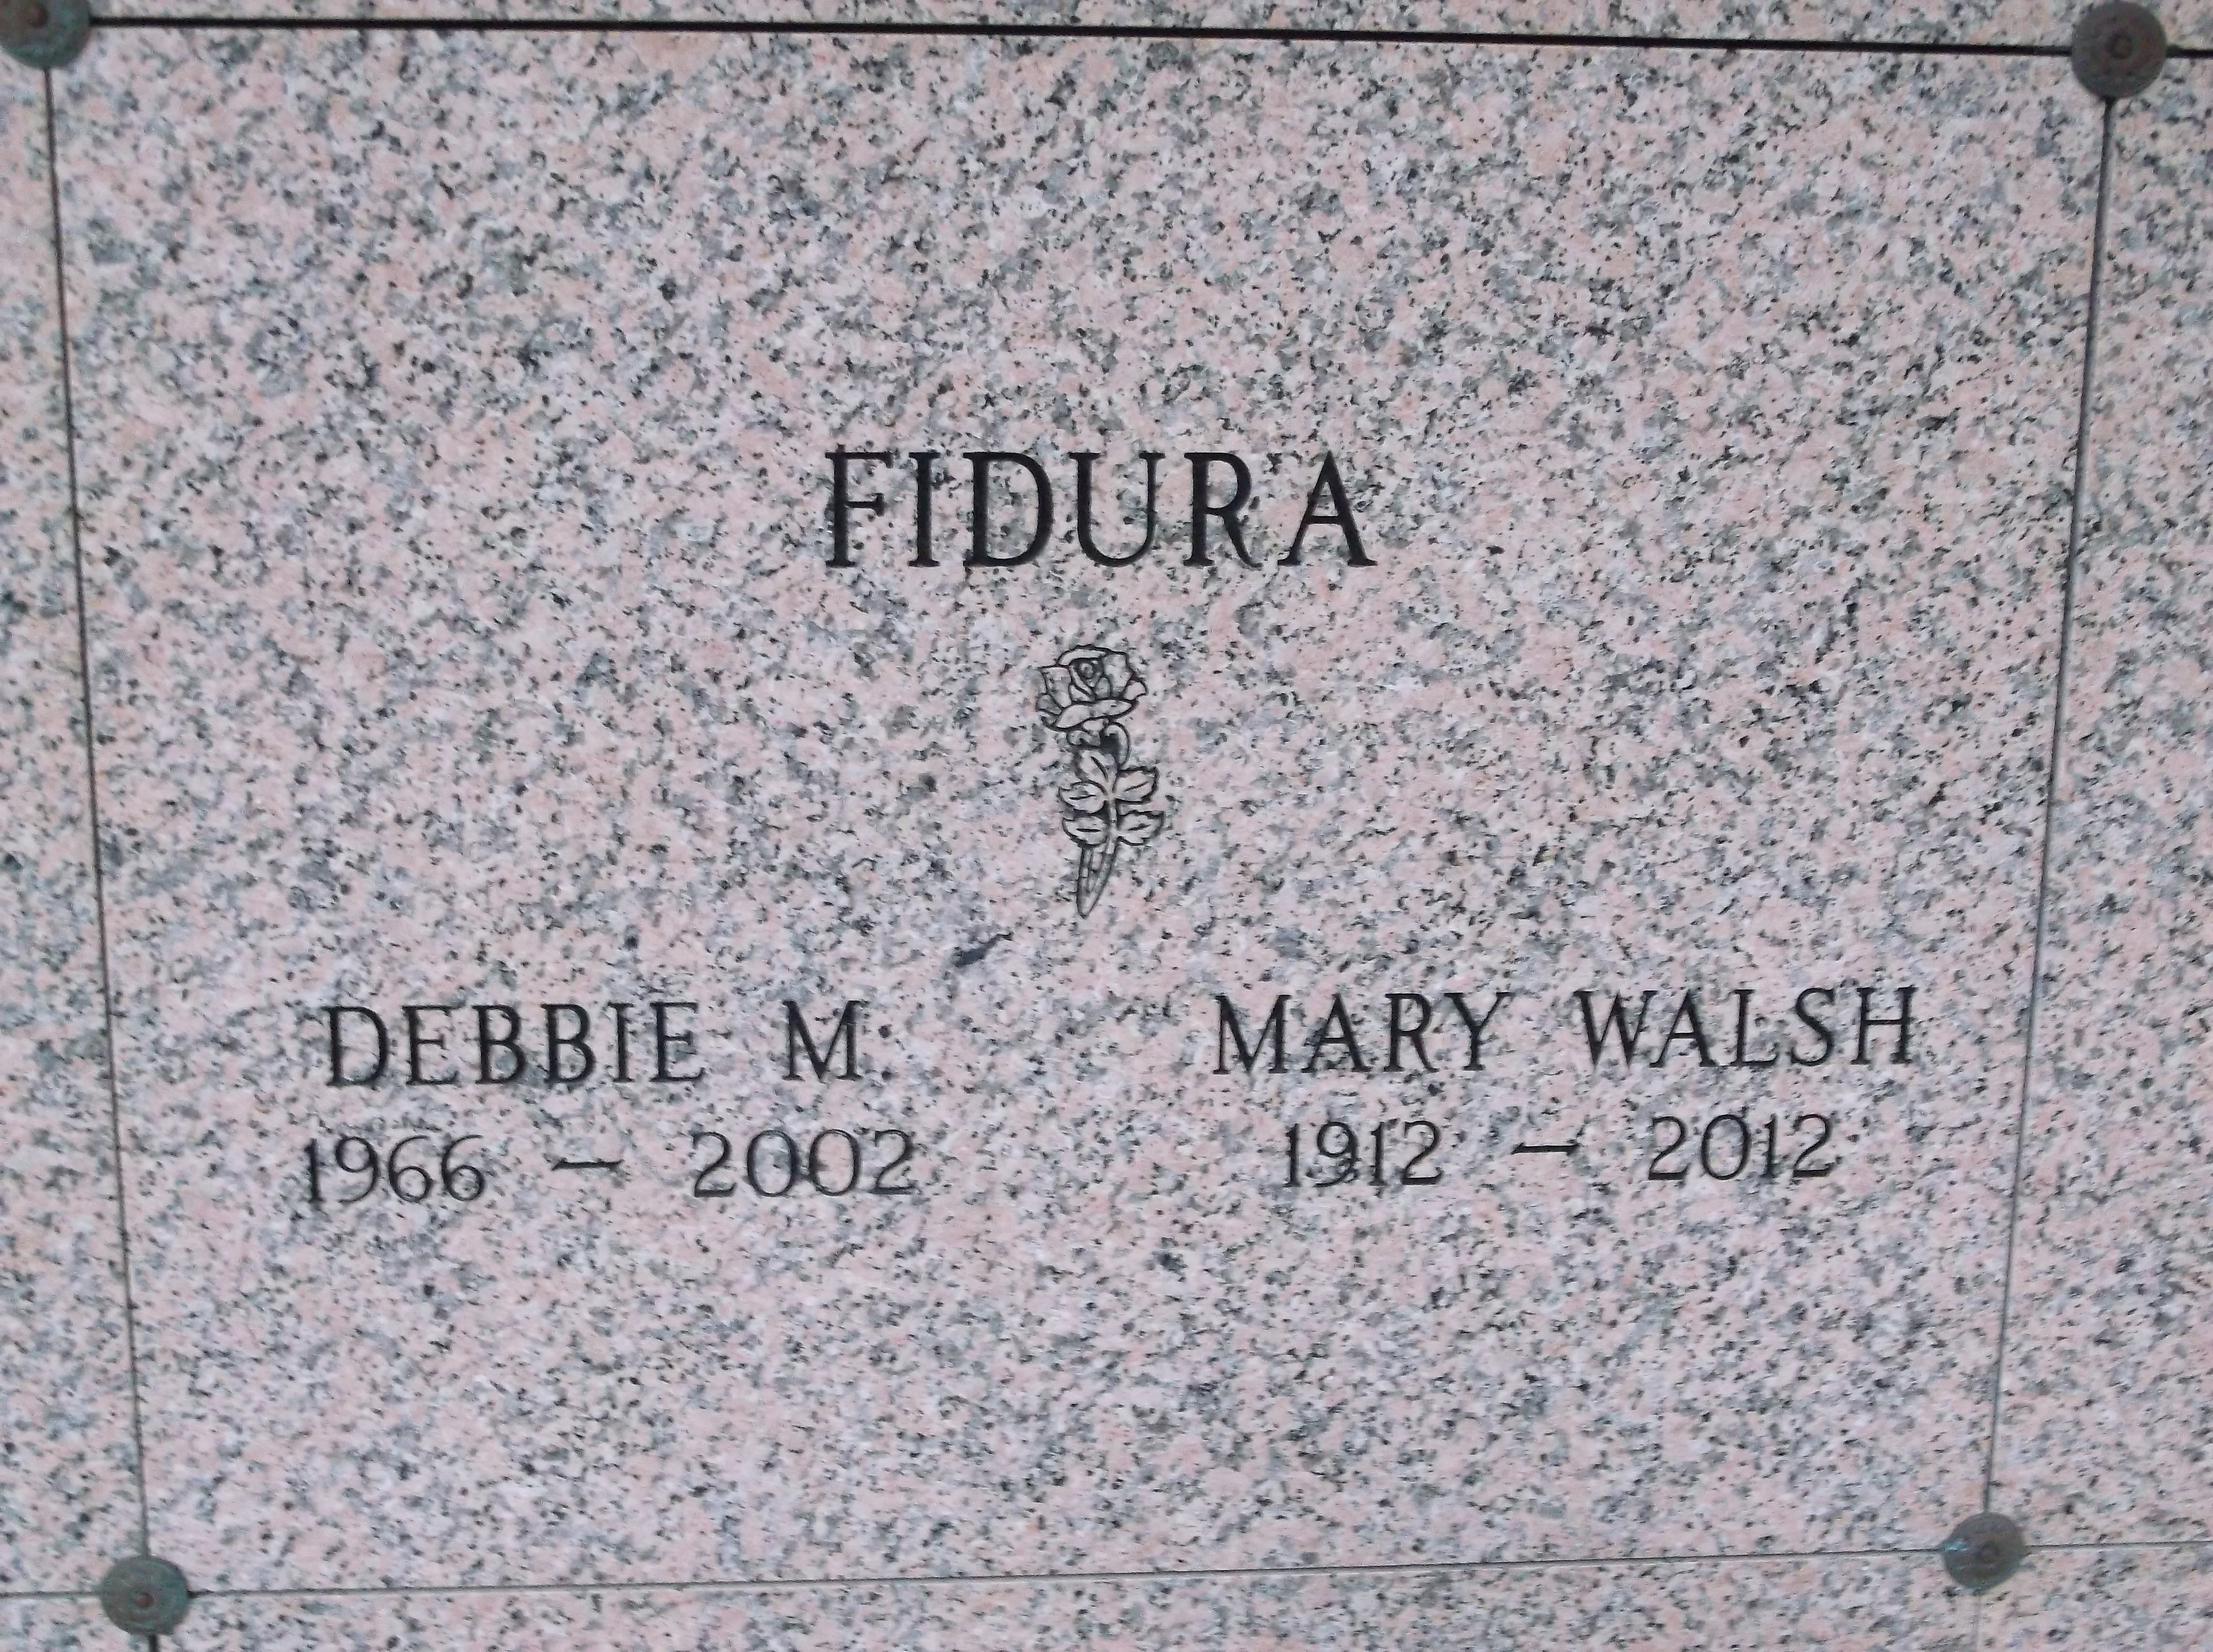 Mary Walsh Fidura